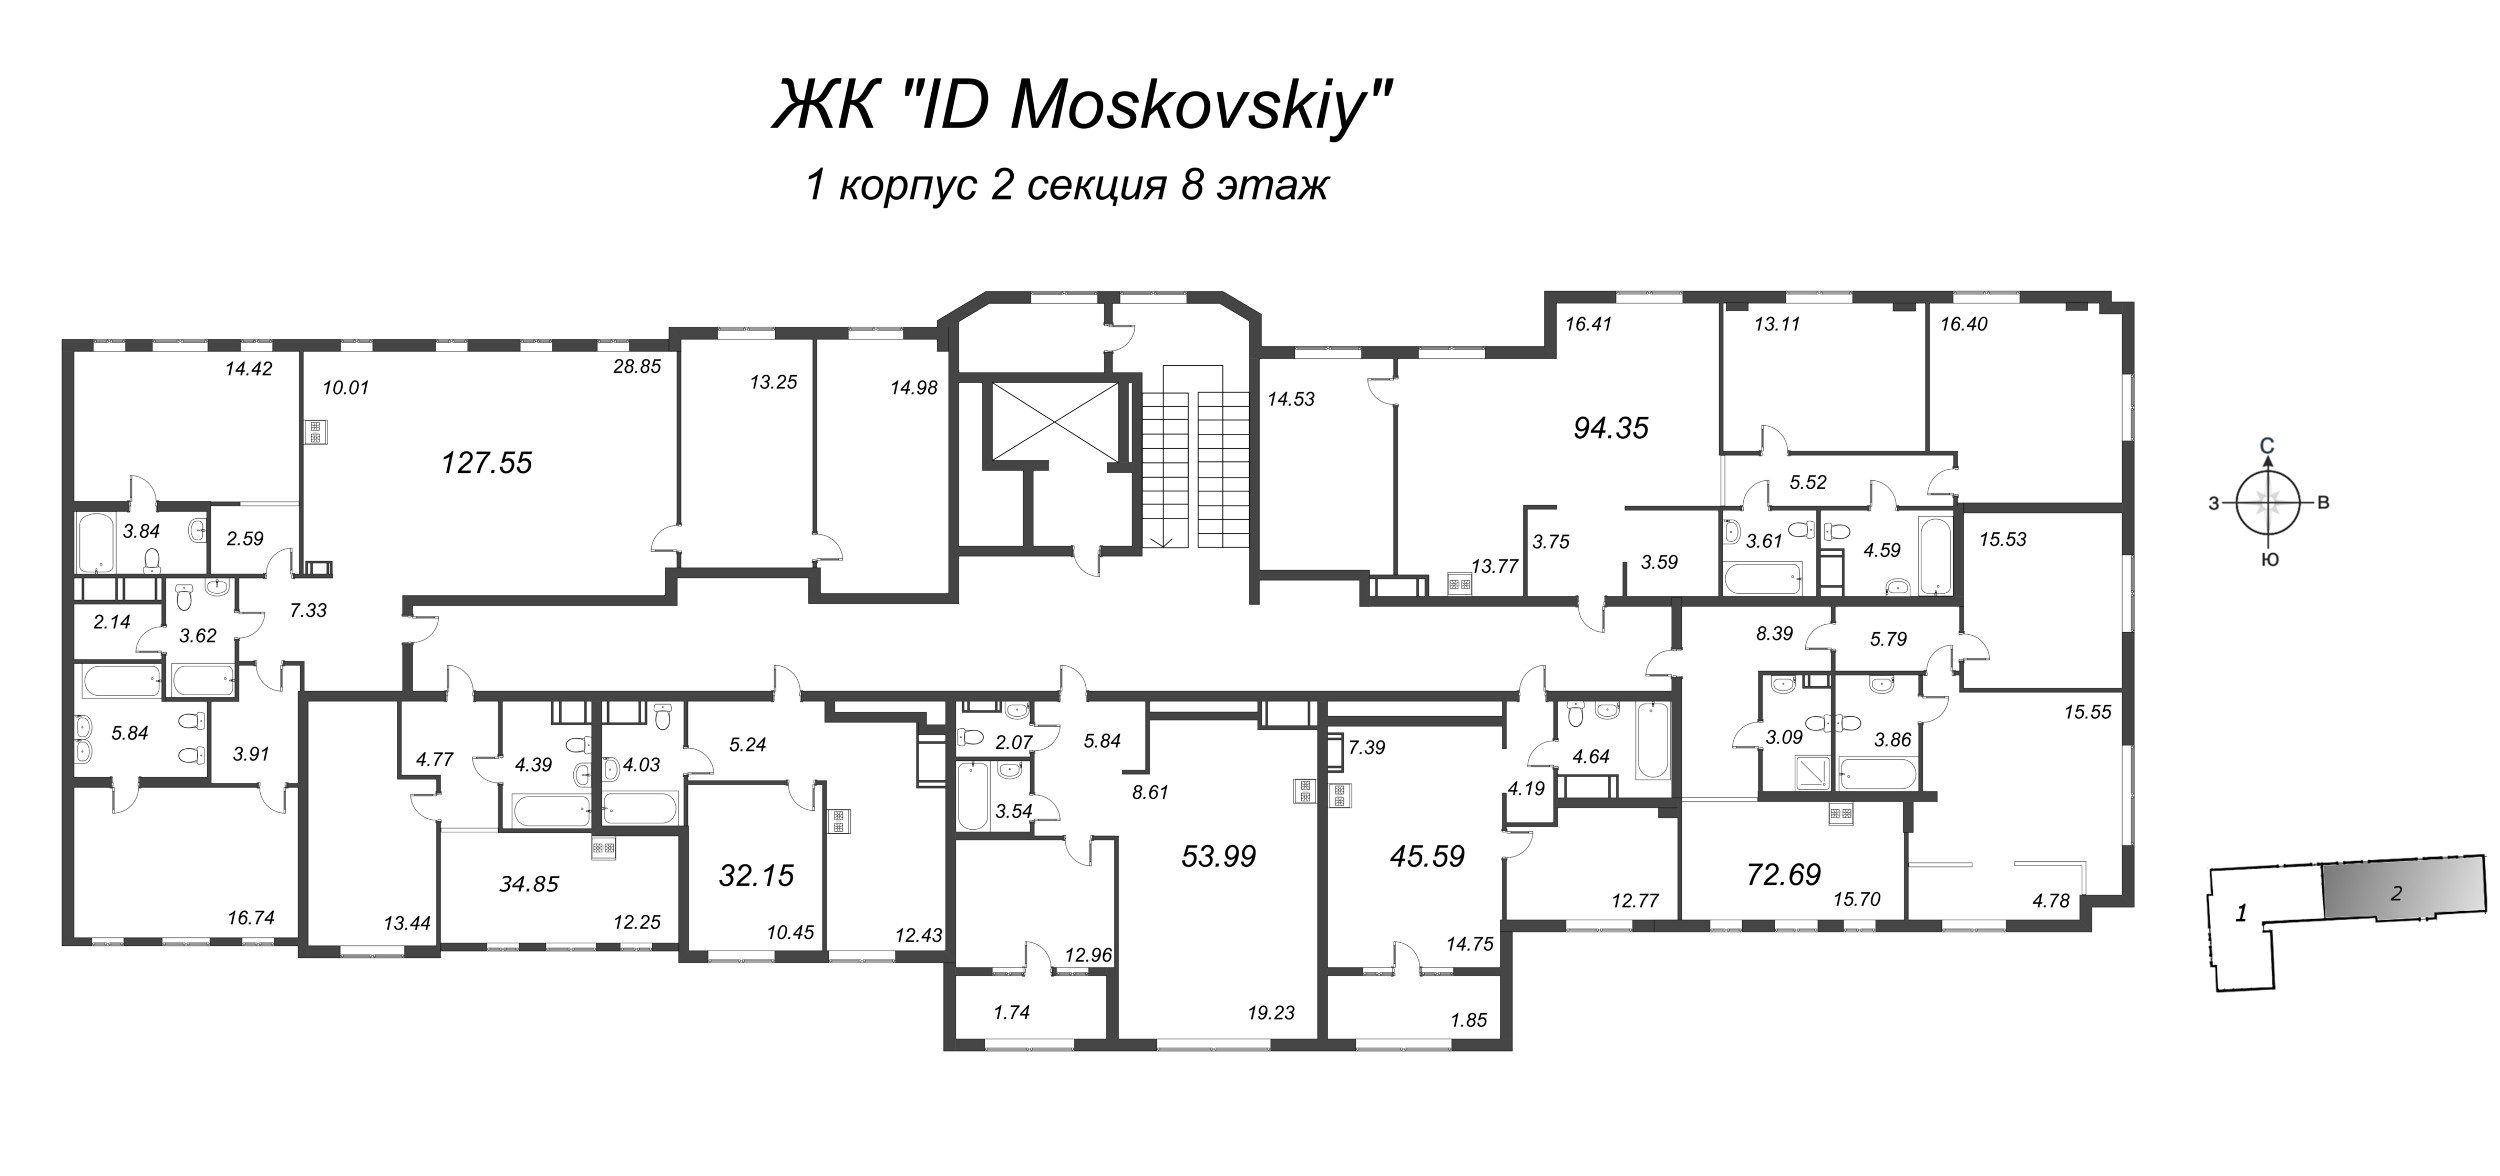 3-комнатная (Евро) квартира, 72.69 м² в ЖК "ID Moskovskiy" - планировка этажа